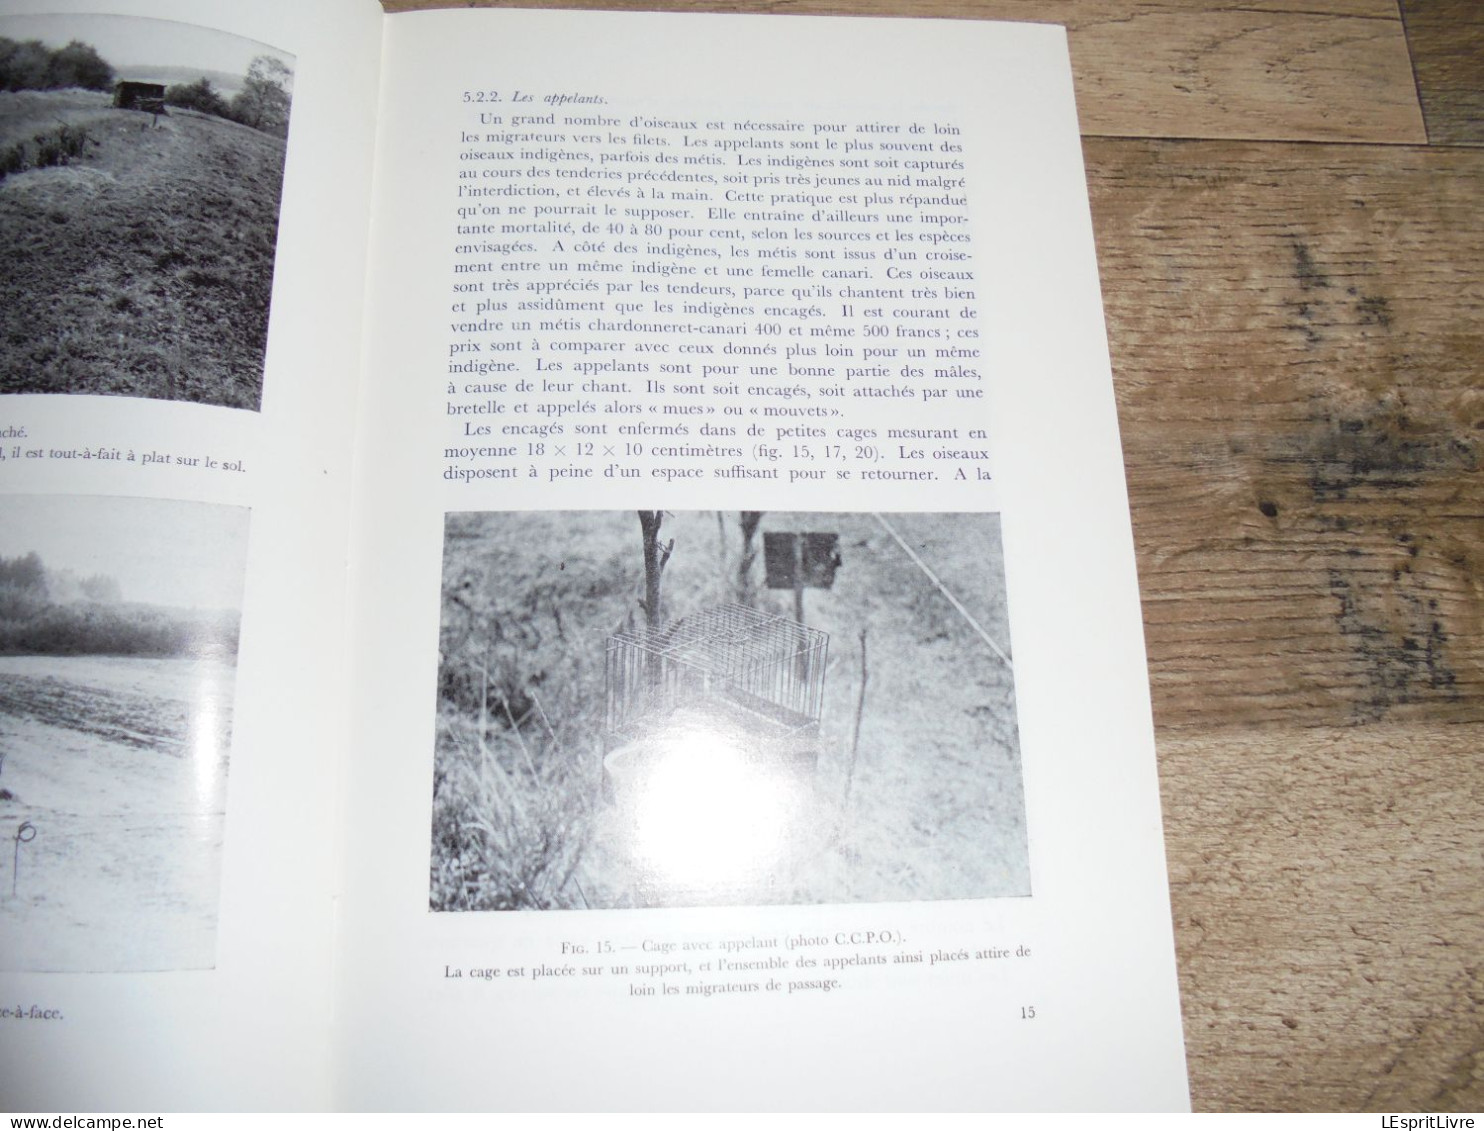 LES NATURALISTES BELGES N° 1 Année 1971 Régionalisme La Tenderie au Luxembourg Belge Oiseaux Sandre Hêtre Forêt Soignes